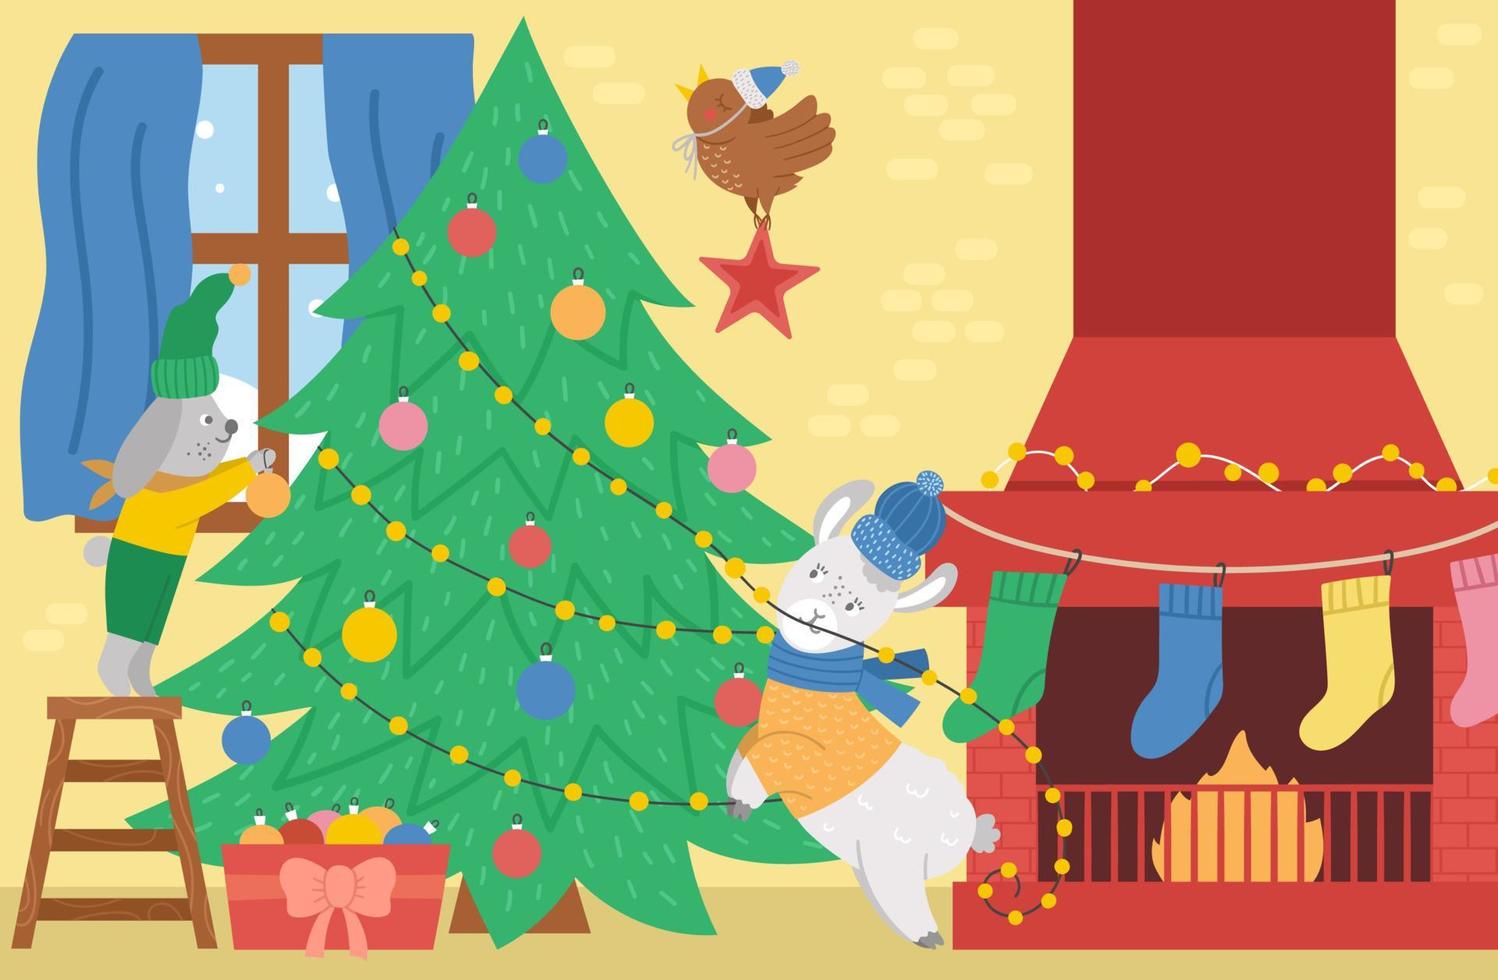 scena di decorazione dell'albero di Natale vettoriale con simpatici animali, camino, calze. sfondo vacanza invernale. illustrazione degli interni della casa di capodanno, invito o design della carta.